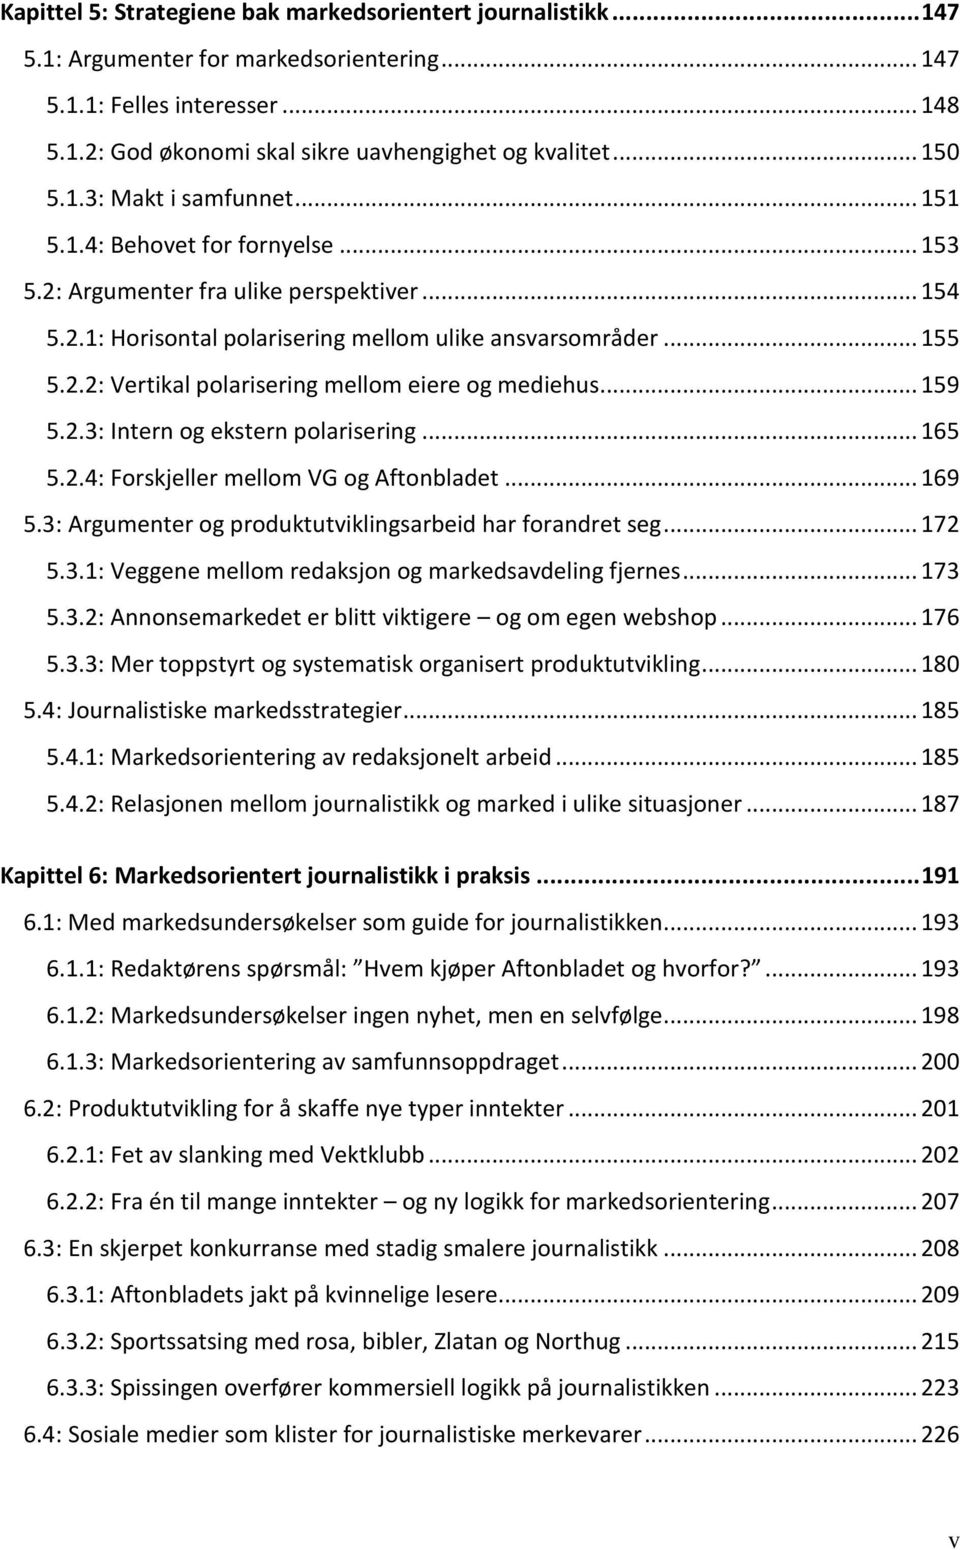 .. 159 5.2.3: Intern og ekstern polarisering... 165 5.2.4: Forskjeller mellom VG og Aftonbladet... 169 5.3: Argumenter og produktutviklingsarbeid har forandret seg... 172 5.3.1: Veggene mellom redaksjon og markedsavdeling fjernes.